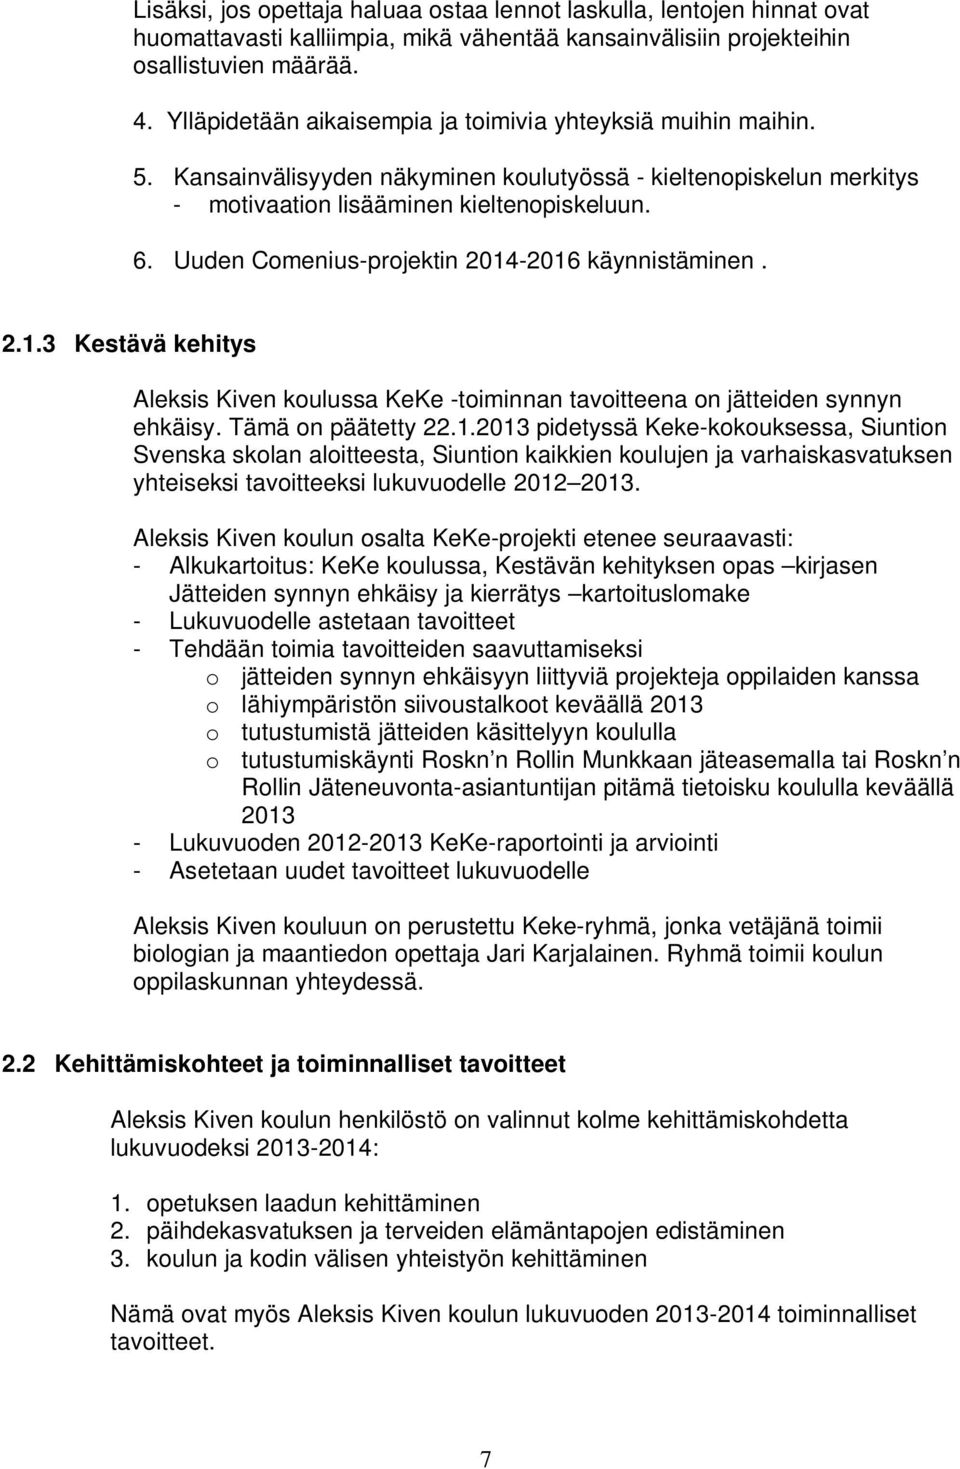 Uuden Comenius-projektin 2014-2016 käynnistäminen. 2.1.3 Kestävä kehitys Aleksis Kiven koulussa KeKe -toiminnan tavoitteena on jätteiden synnyn ehkäisy. Tämä on päätetty 22.1.2013 pidetyssä Keke-kokouksessa, Siuntion Svenska skolan aloitteesta, Siuntion kaikkien koulujen ja varhaiskasvatuksen yhteiseksi tavoitteeksi lukuvuodelle 2012 2013.